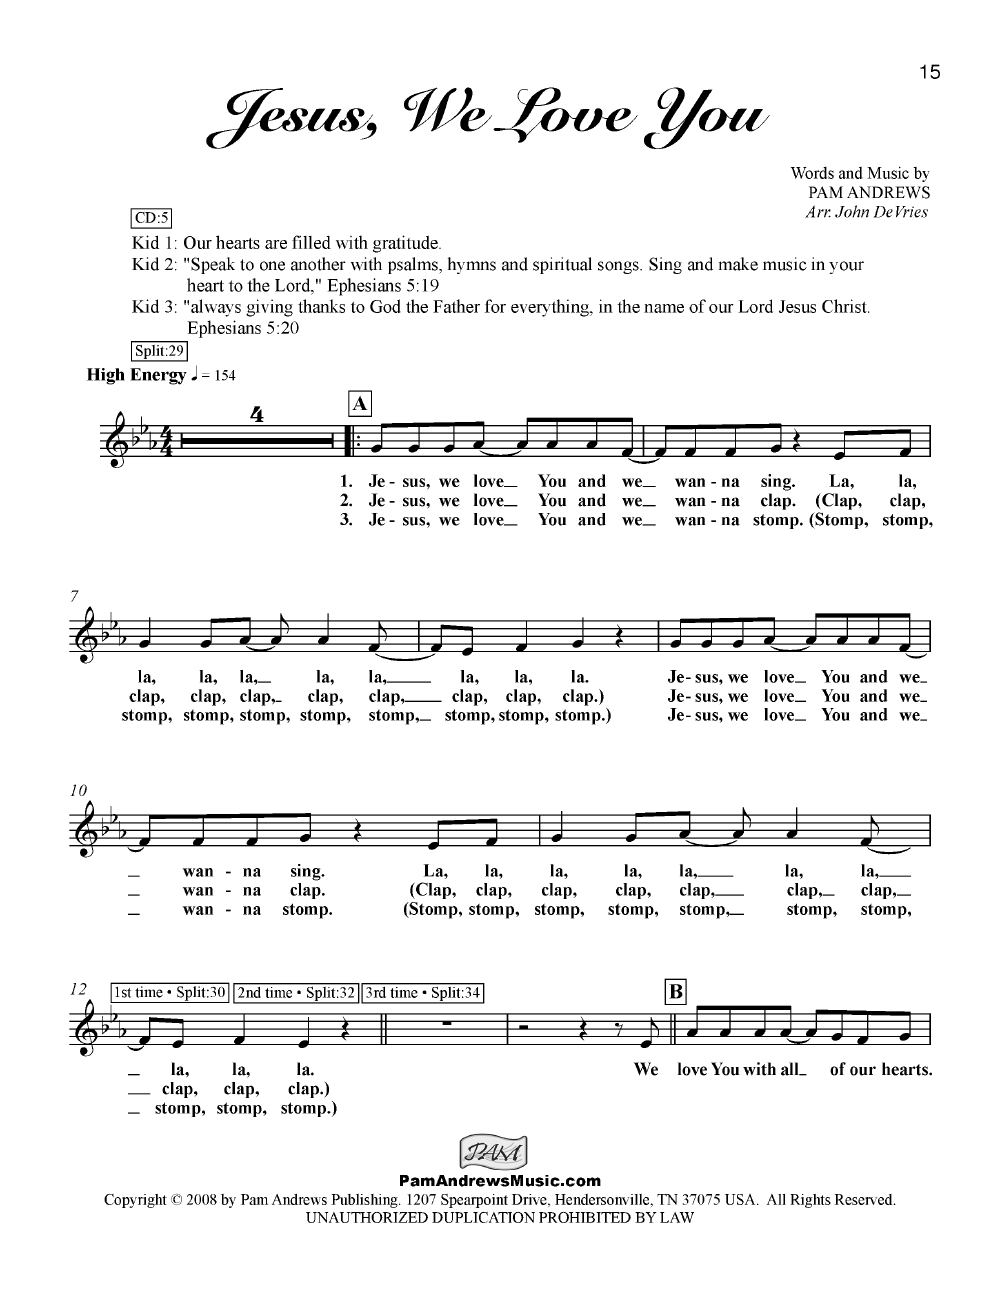 I'm Gonna Sing Kids Scores/Lyric Sheets pdf